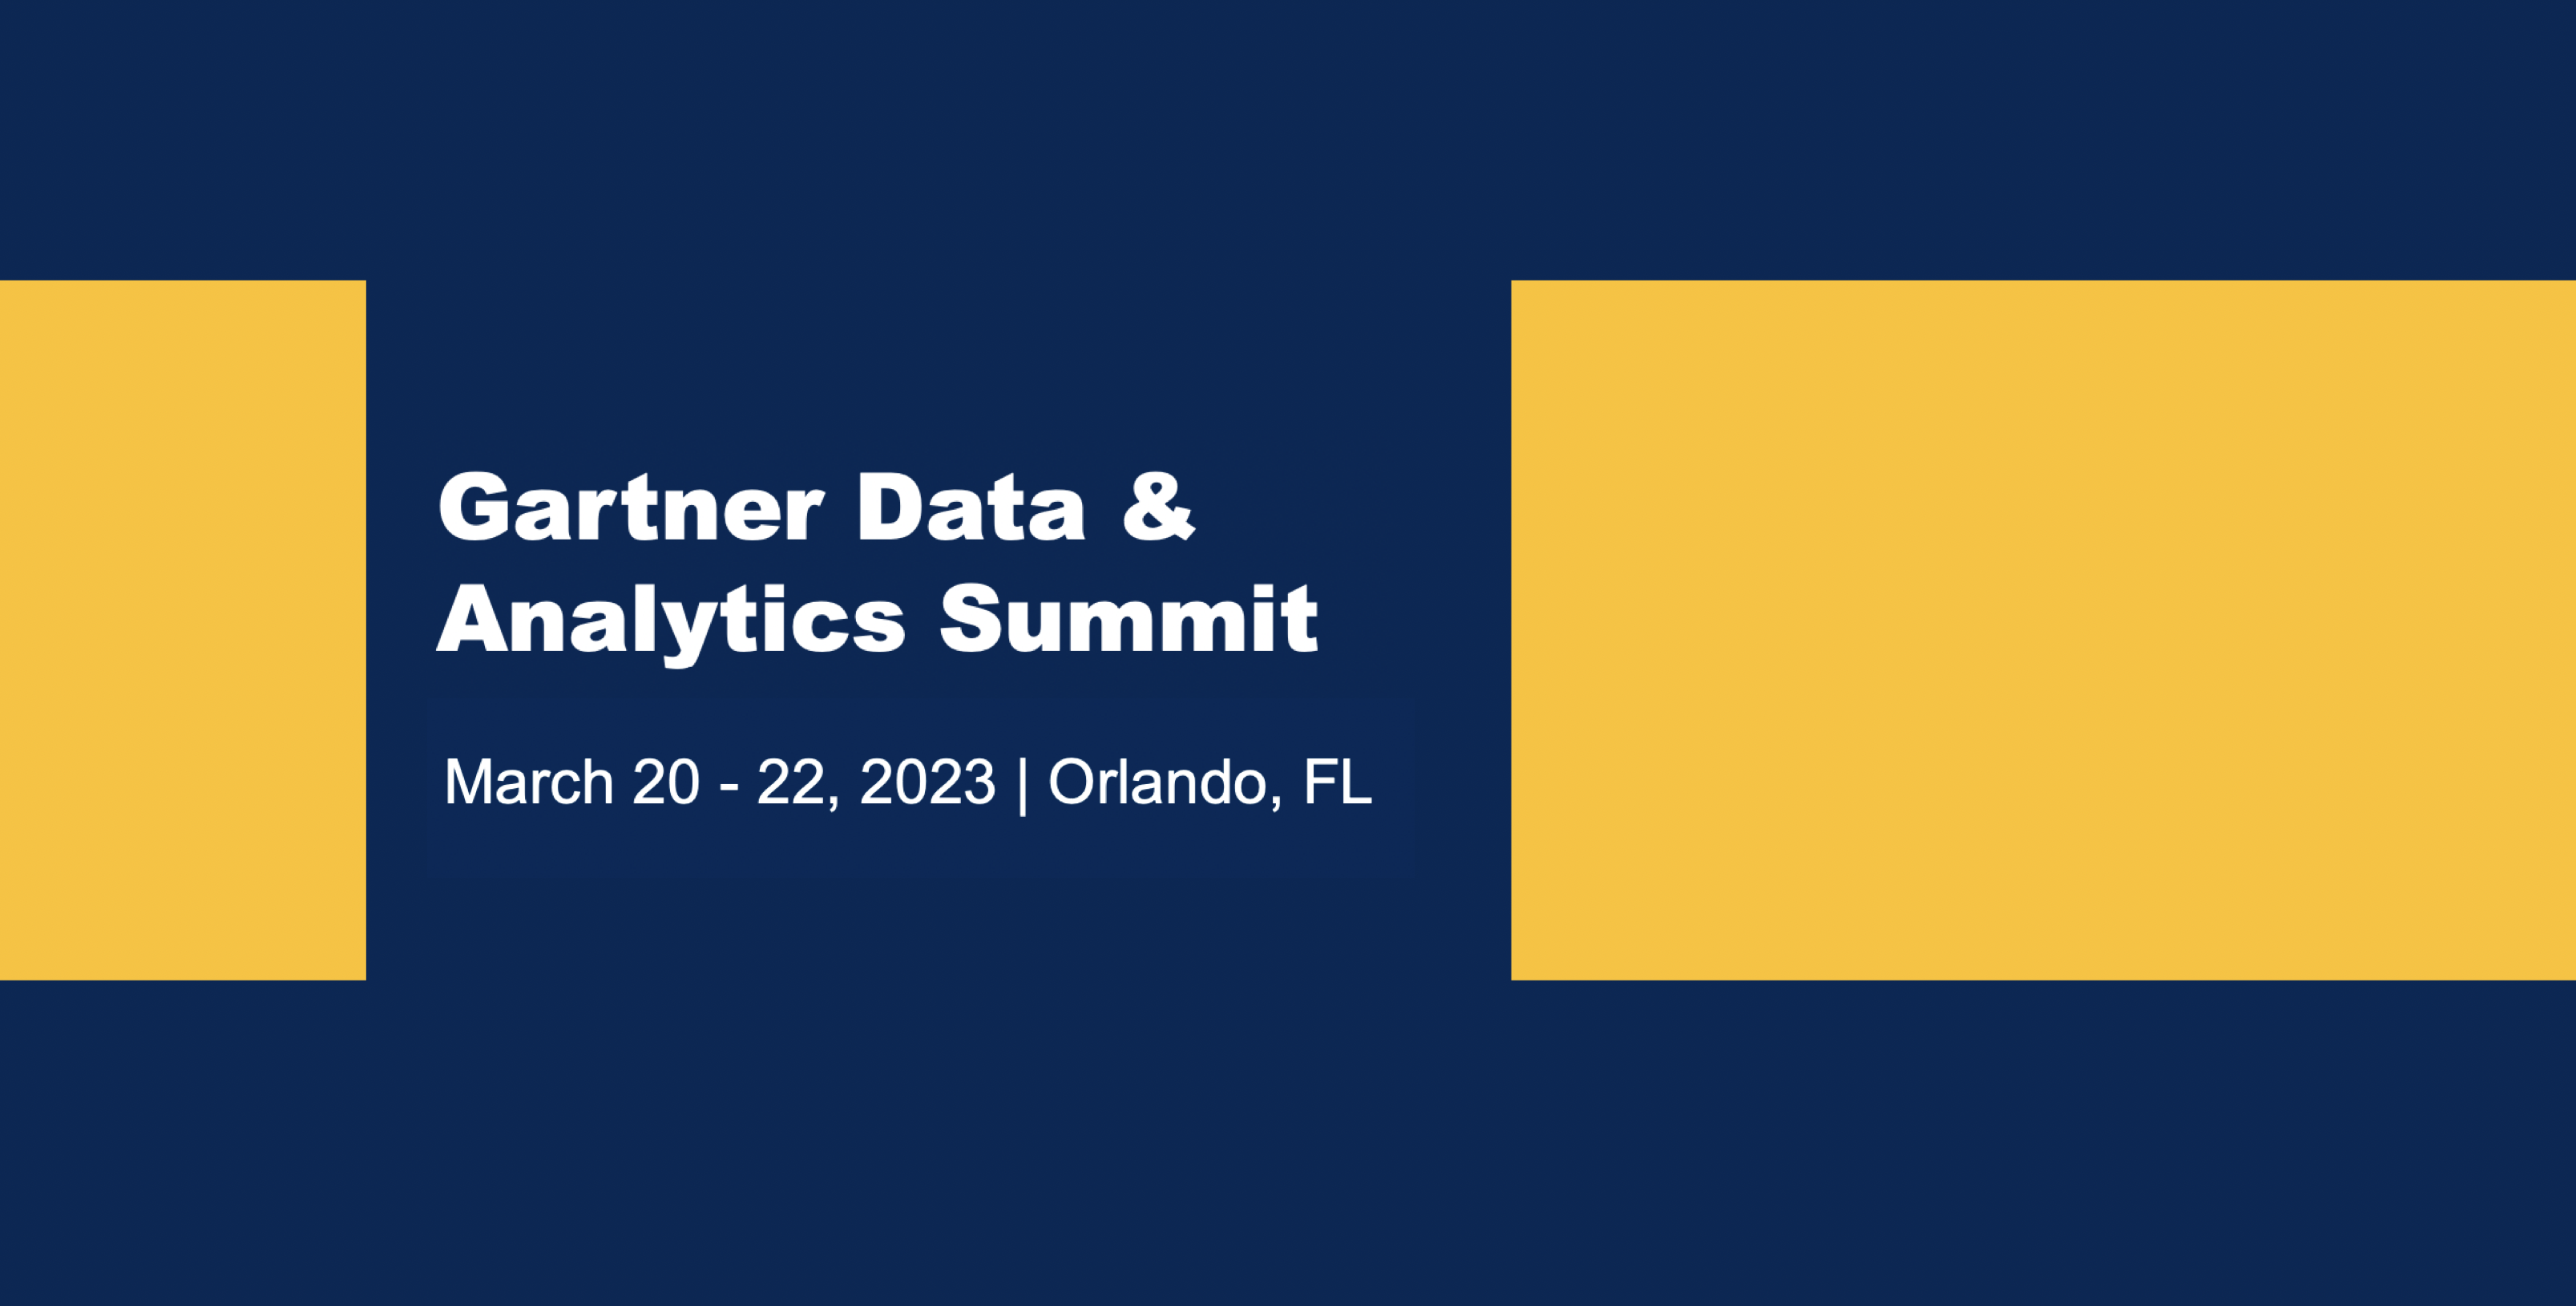 Meet Verta at Gartner Data & Analytics Summit